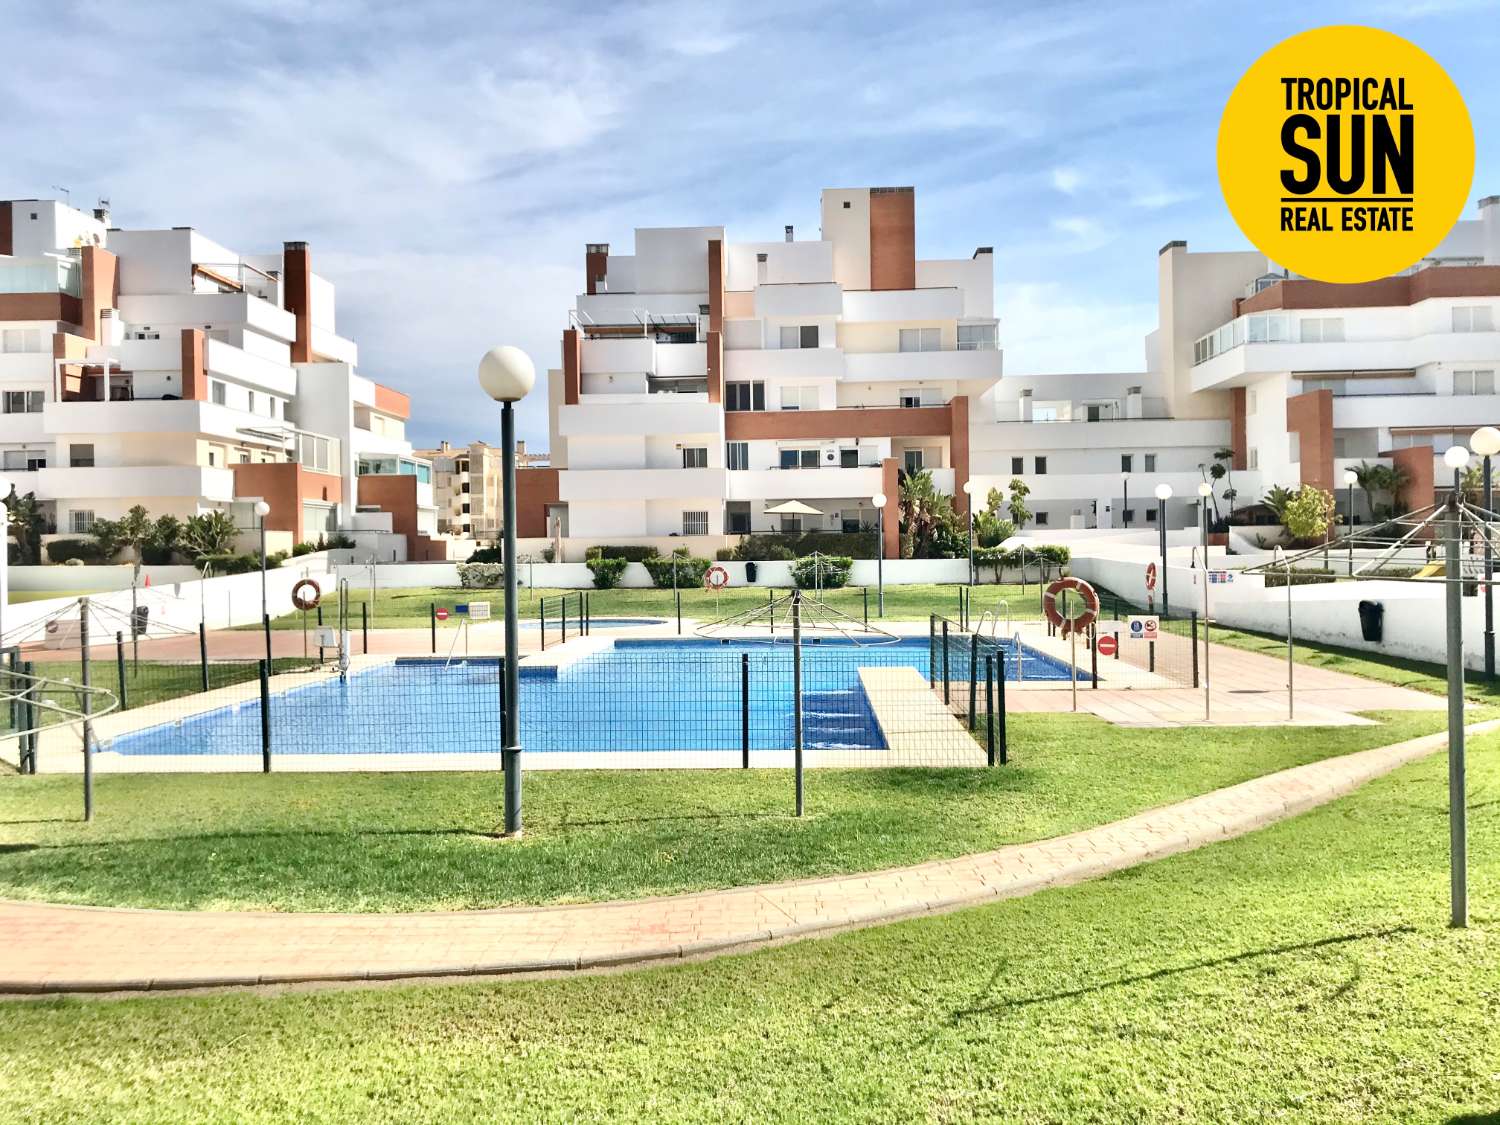 Descobreix el paradís a Roquetas de Mar: Bell habitatge de 3 dormitoris al residencial Aguaserena